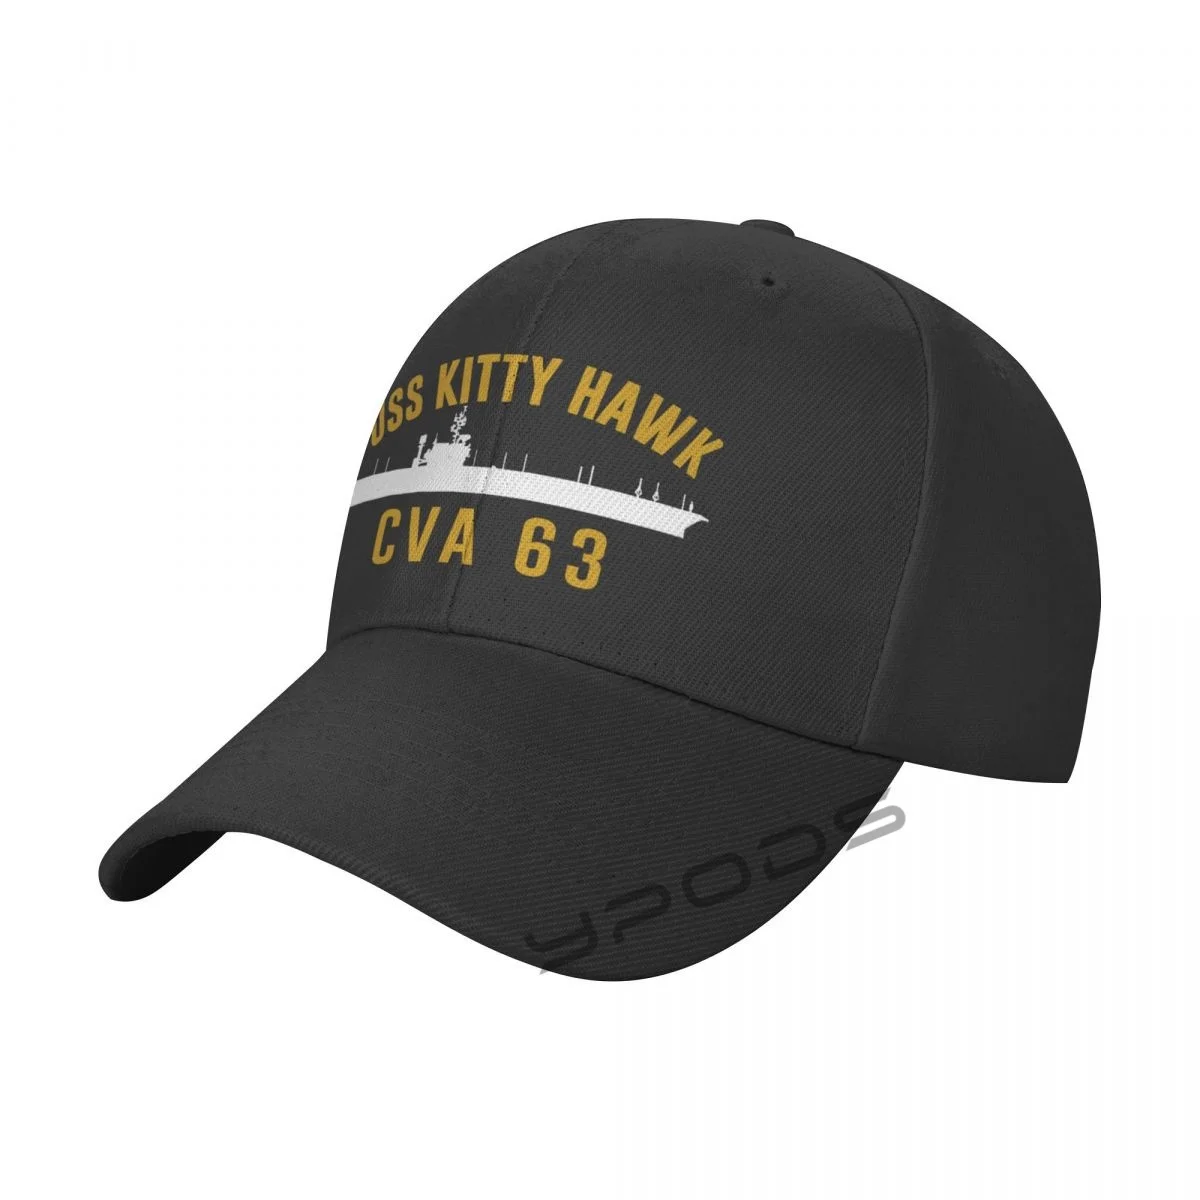 

Бейсболка Мужская/женская, кепка с узором Kitty Hawk Cva 63, регулируемая, для занятий спортом на открытом воздухе